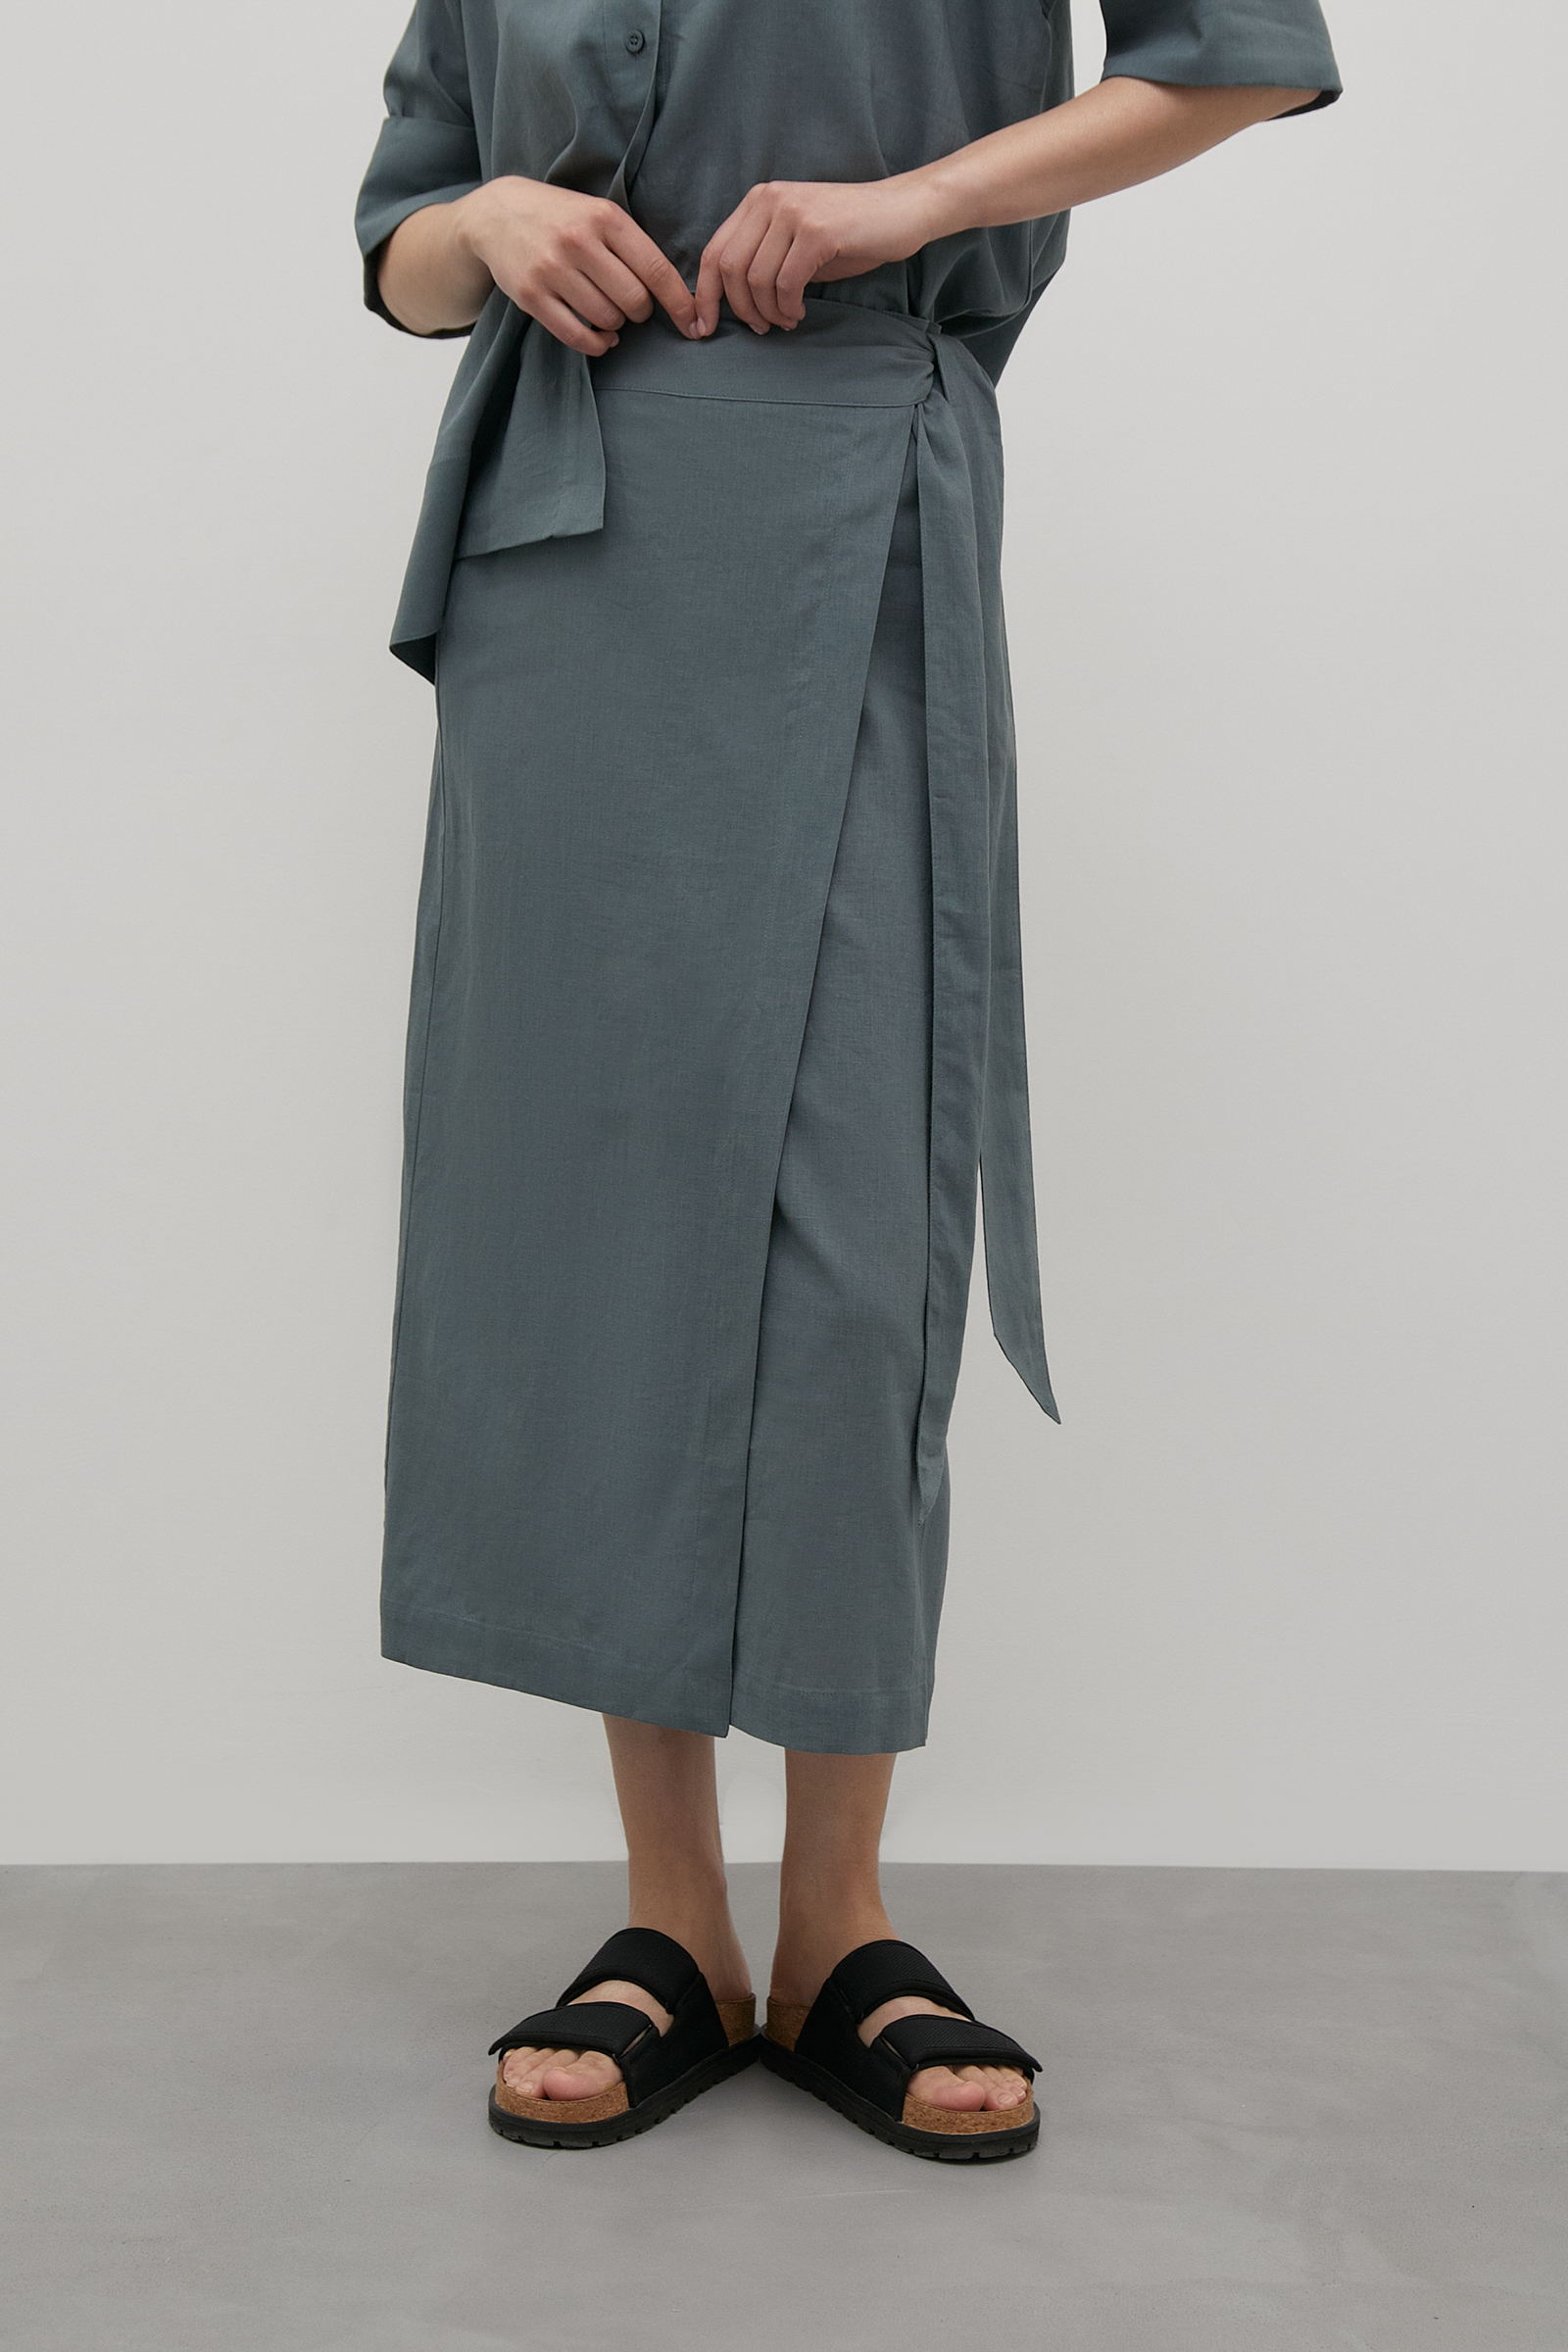 Льняная юбка льняная юбка js 012 размер 42 серый